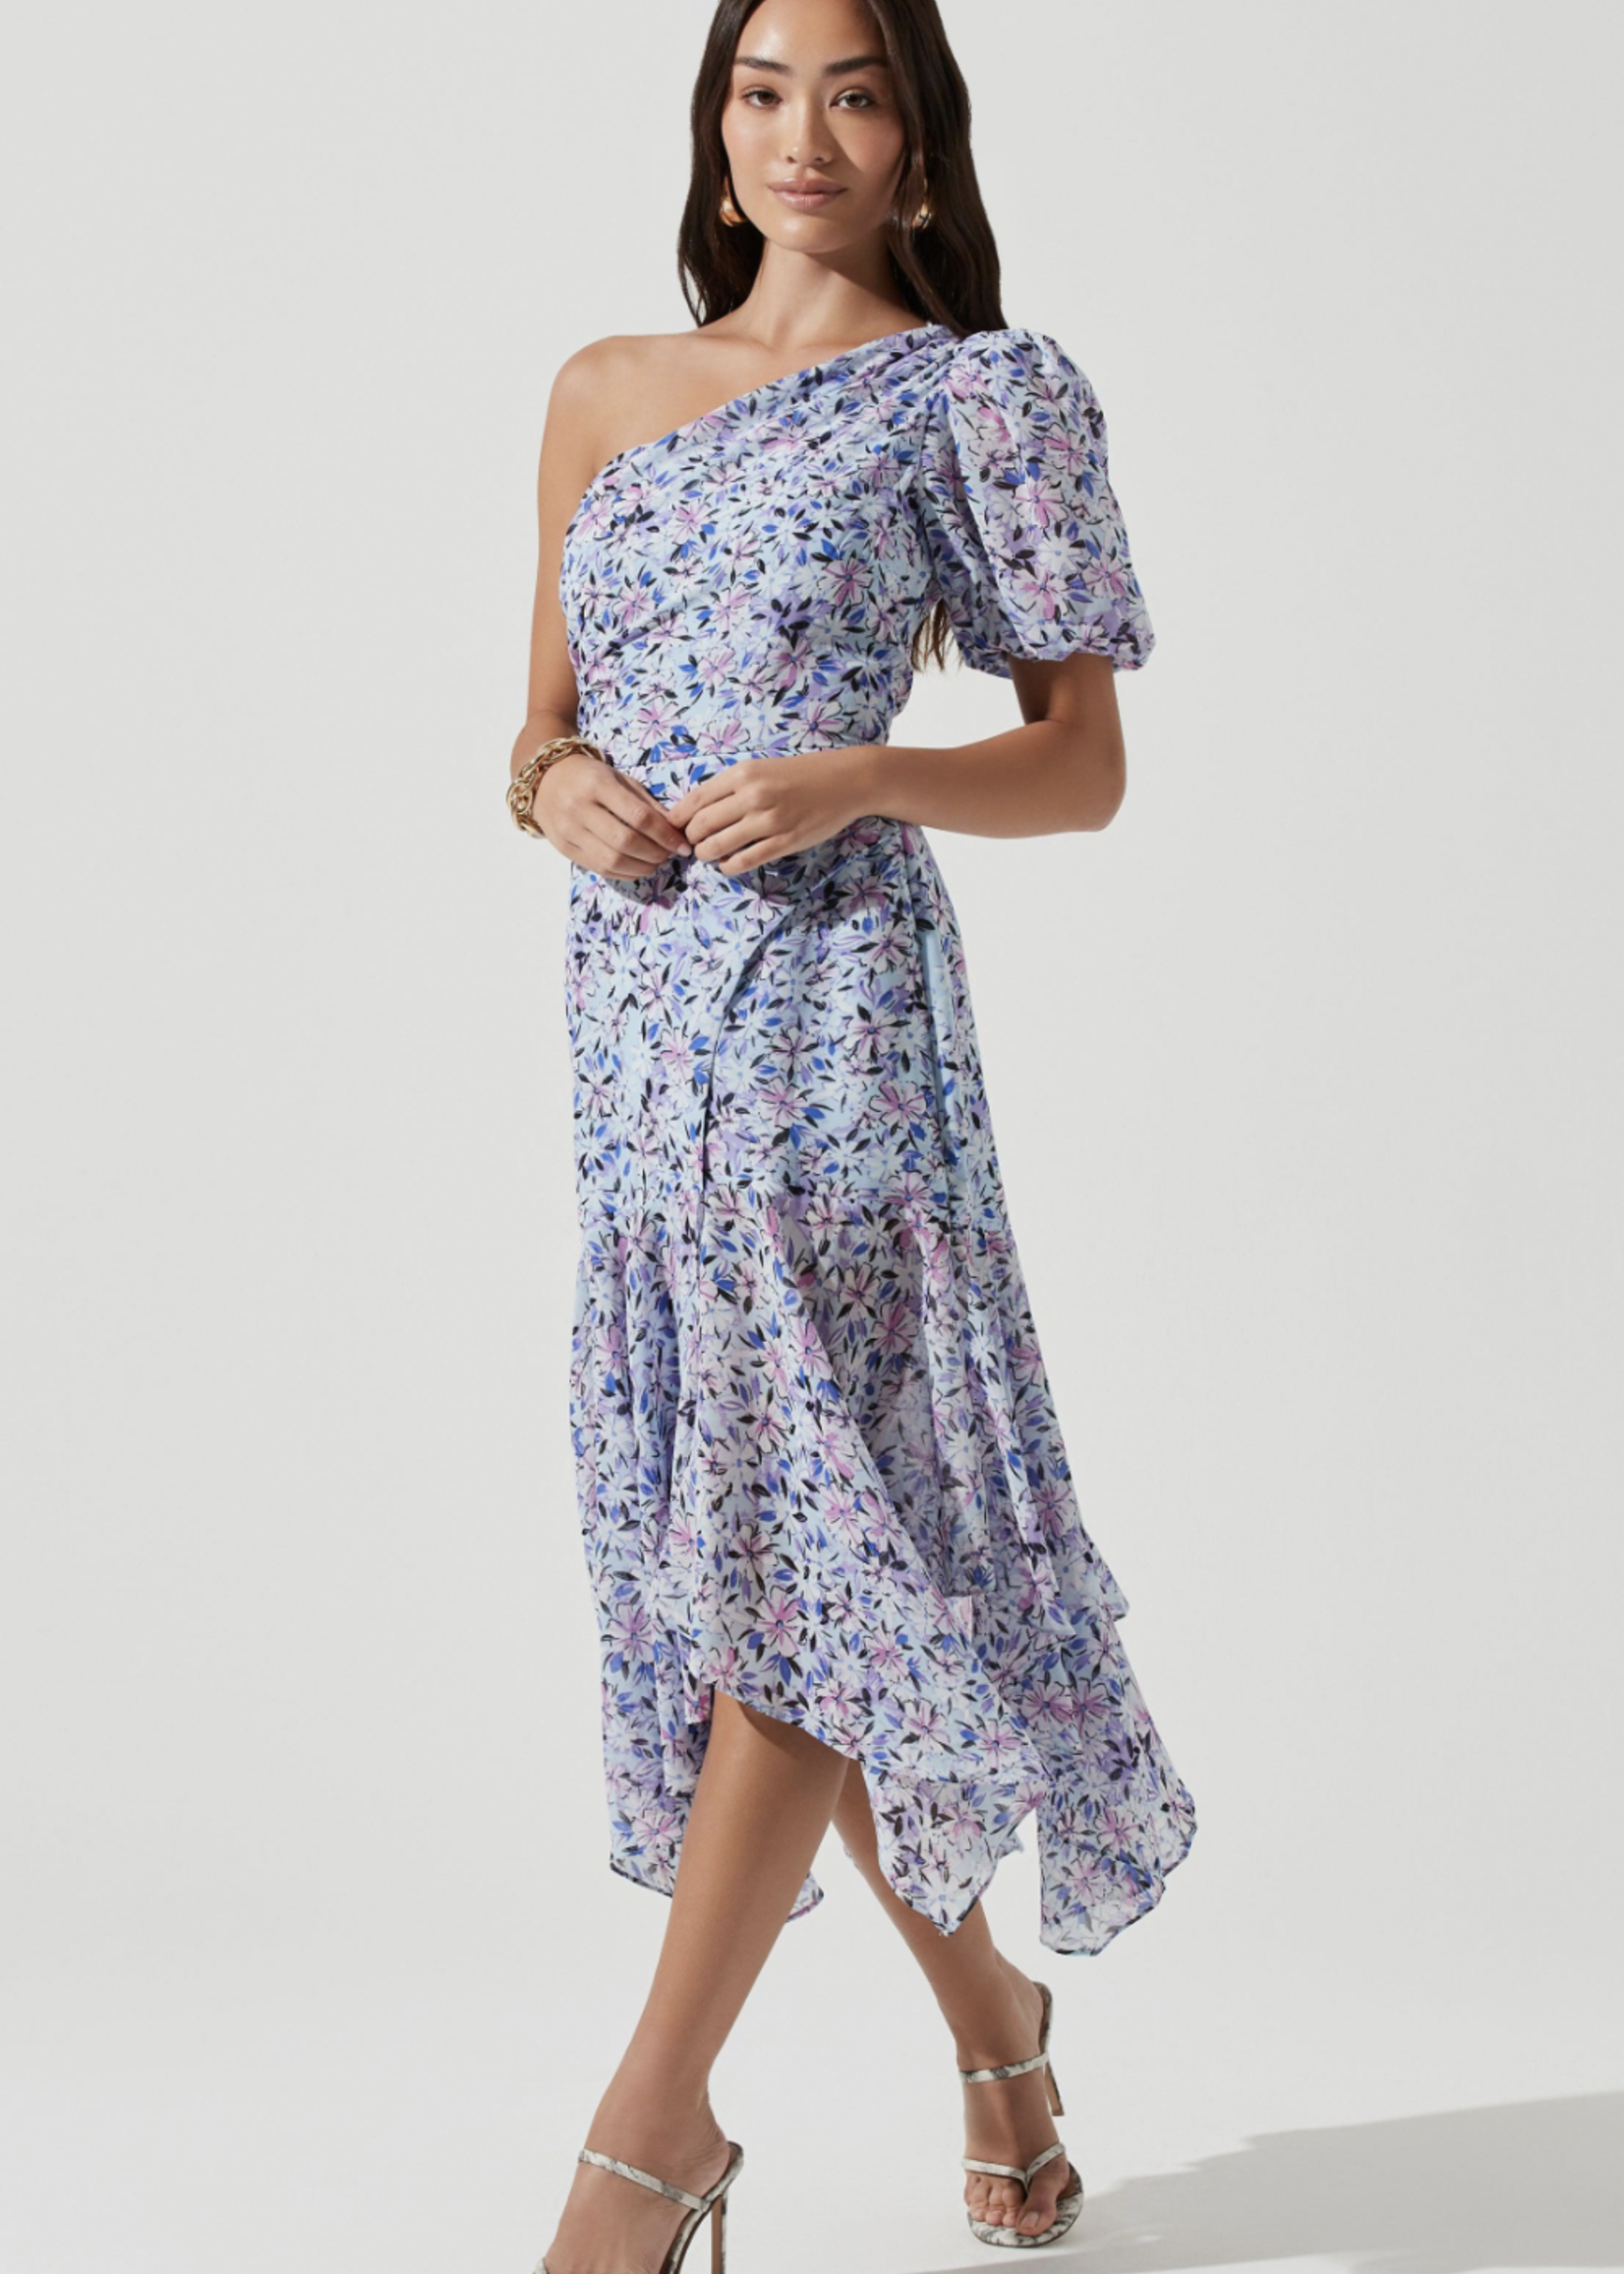 Elitaire Boutique Santorini Dress